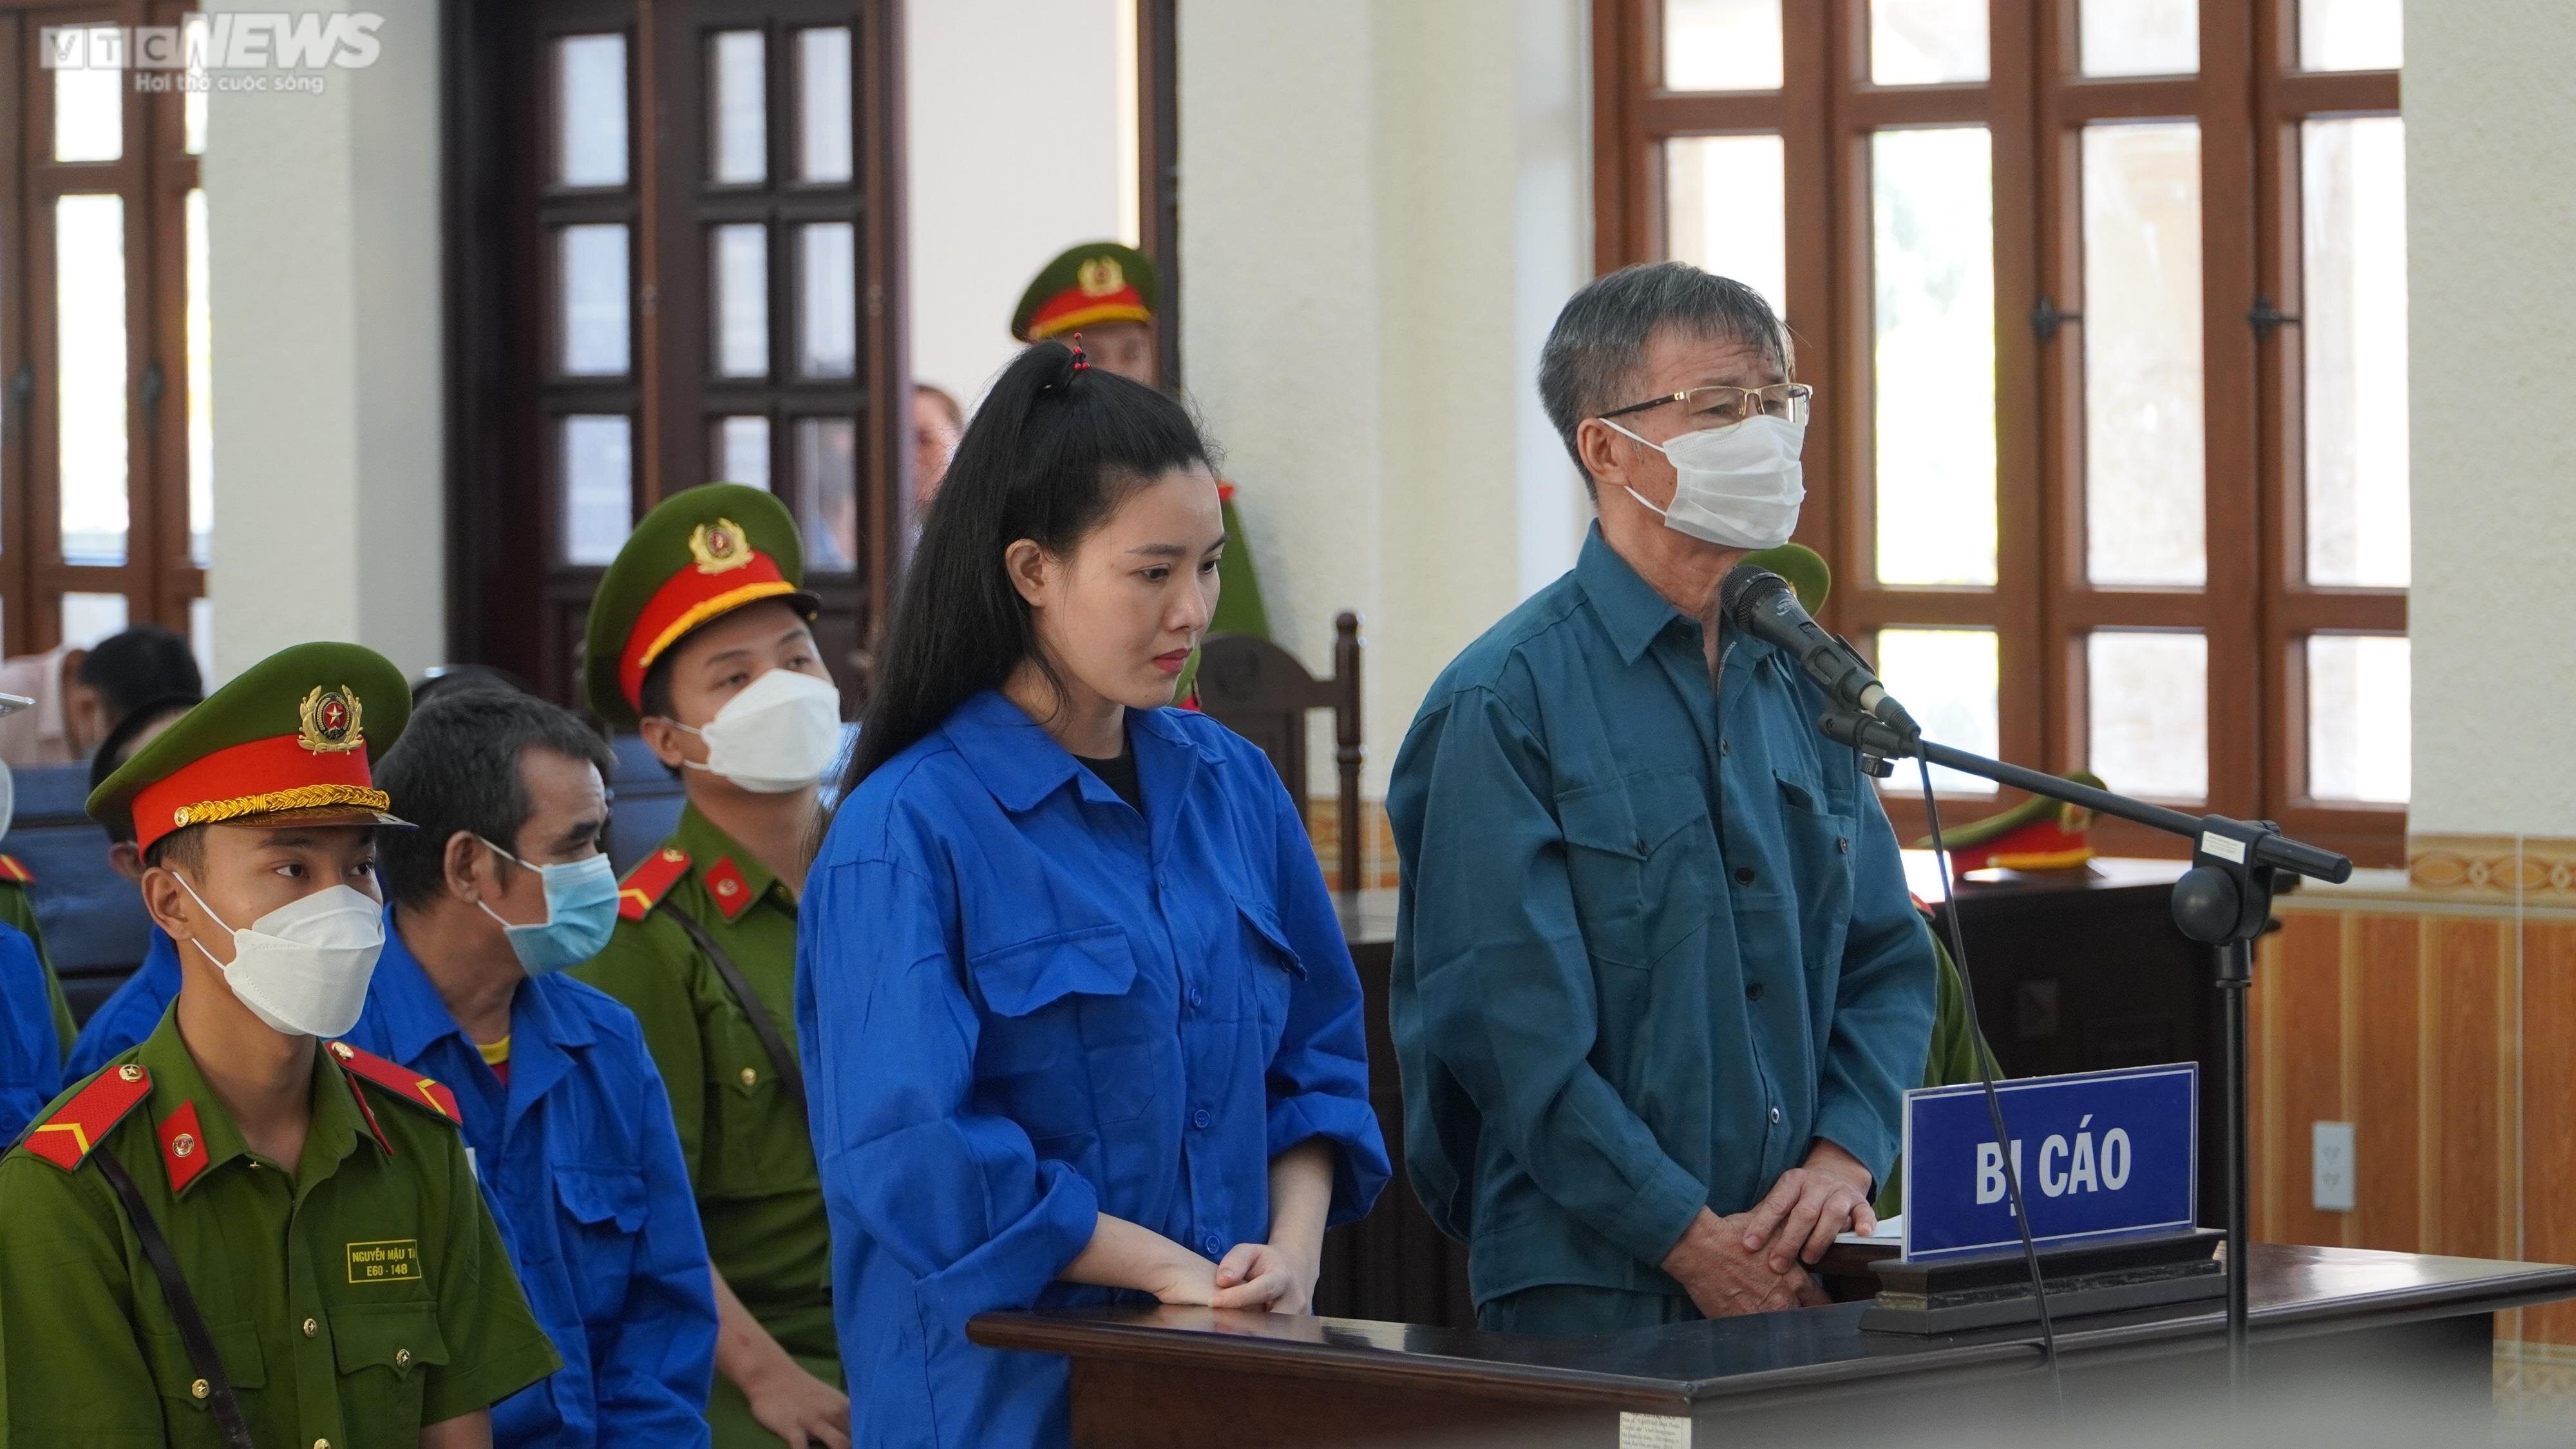 'Hotgirl' lừa đảo 21 tỷ đồng ở Bình Thuận không được giảm án - 1